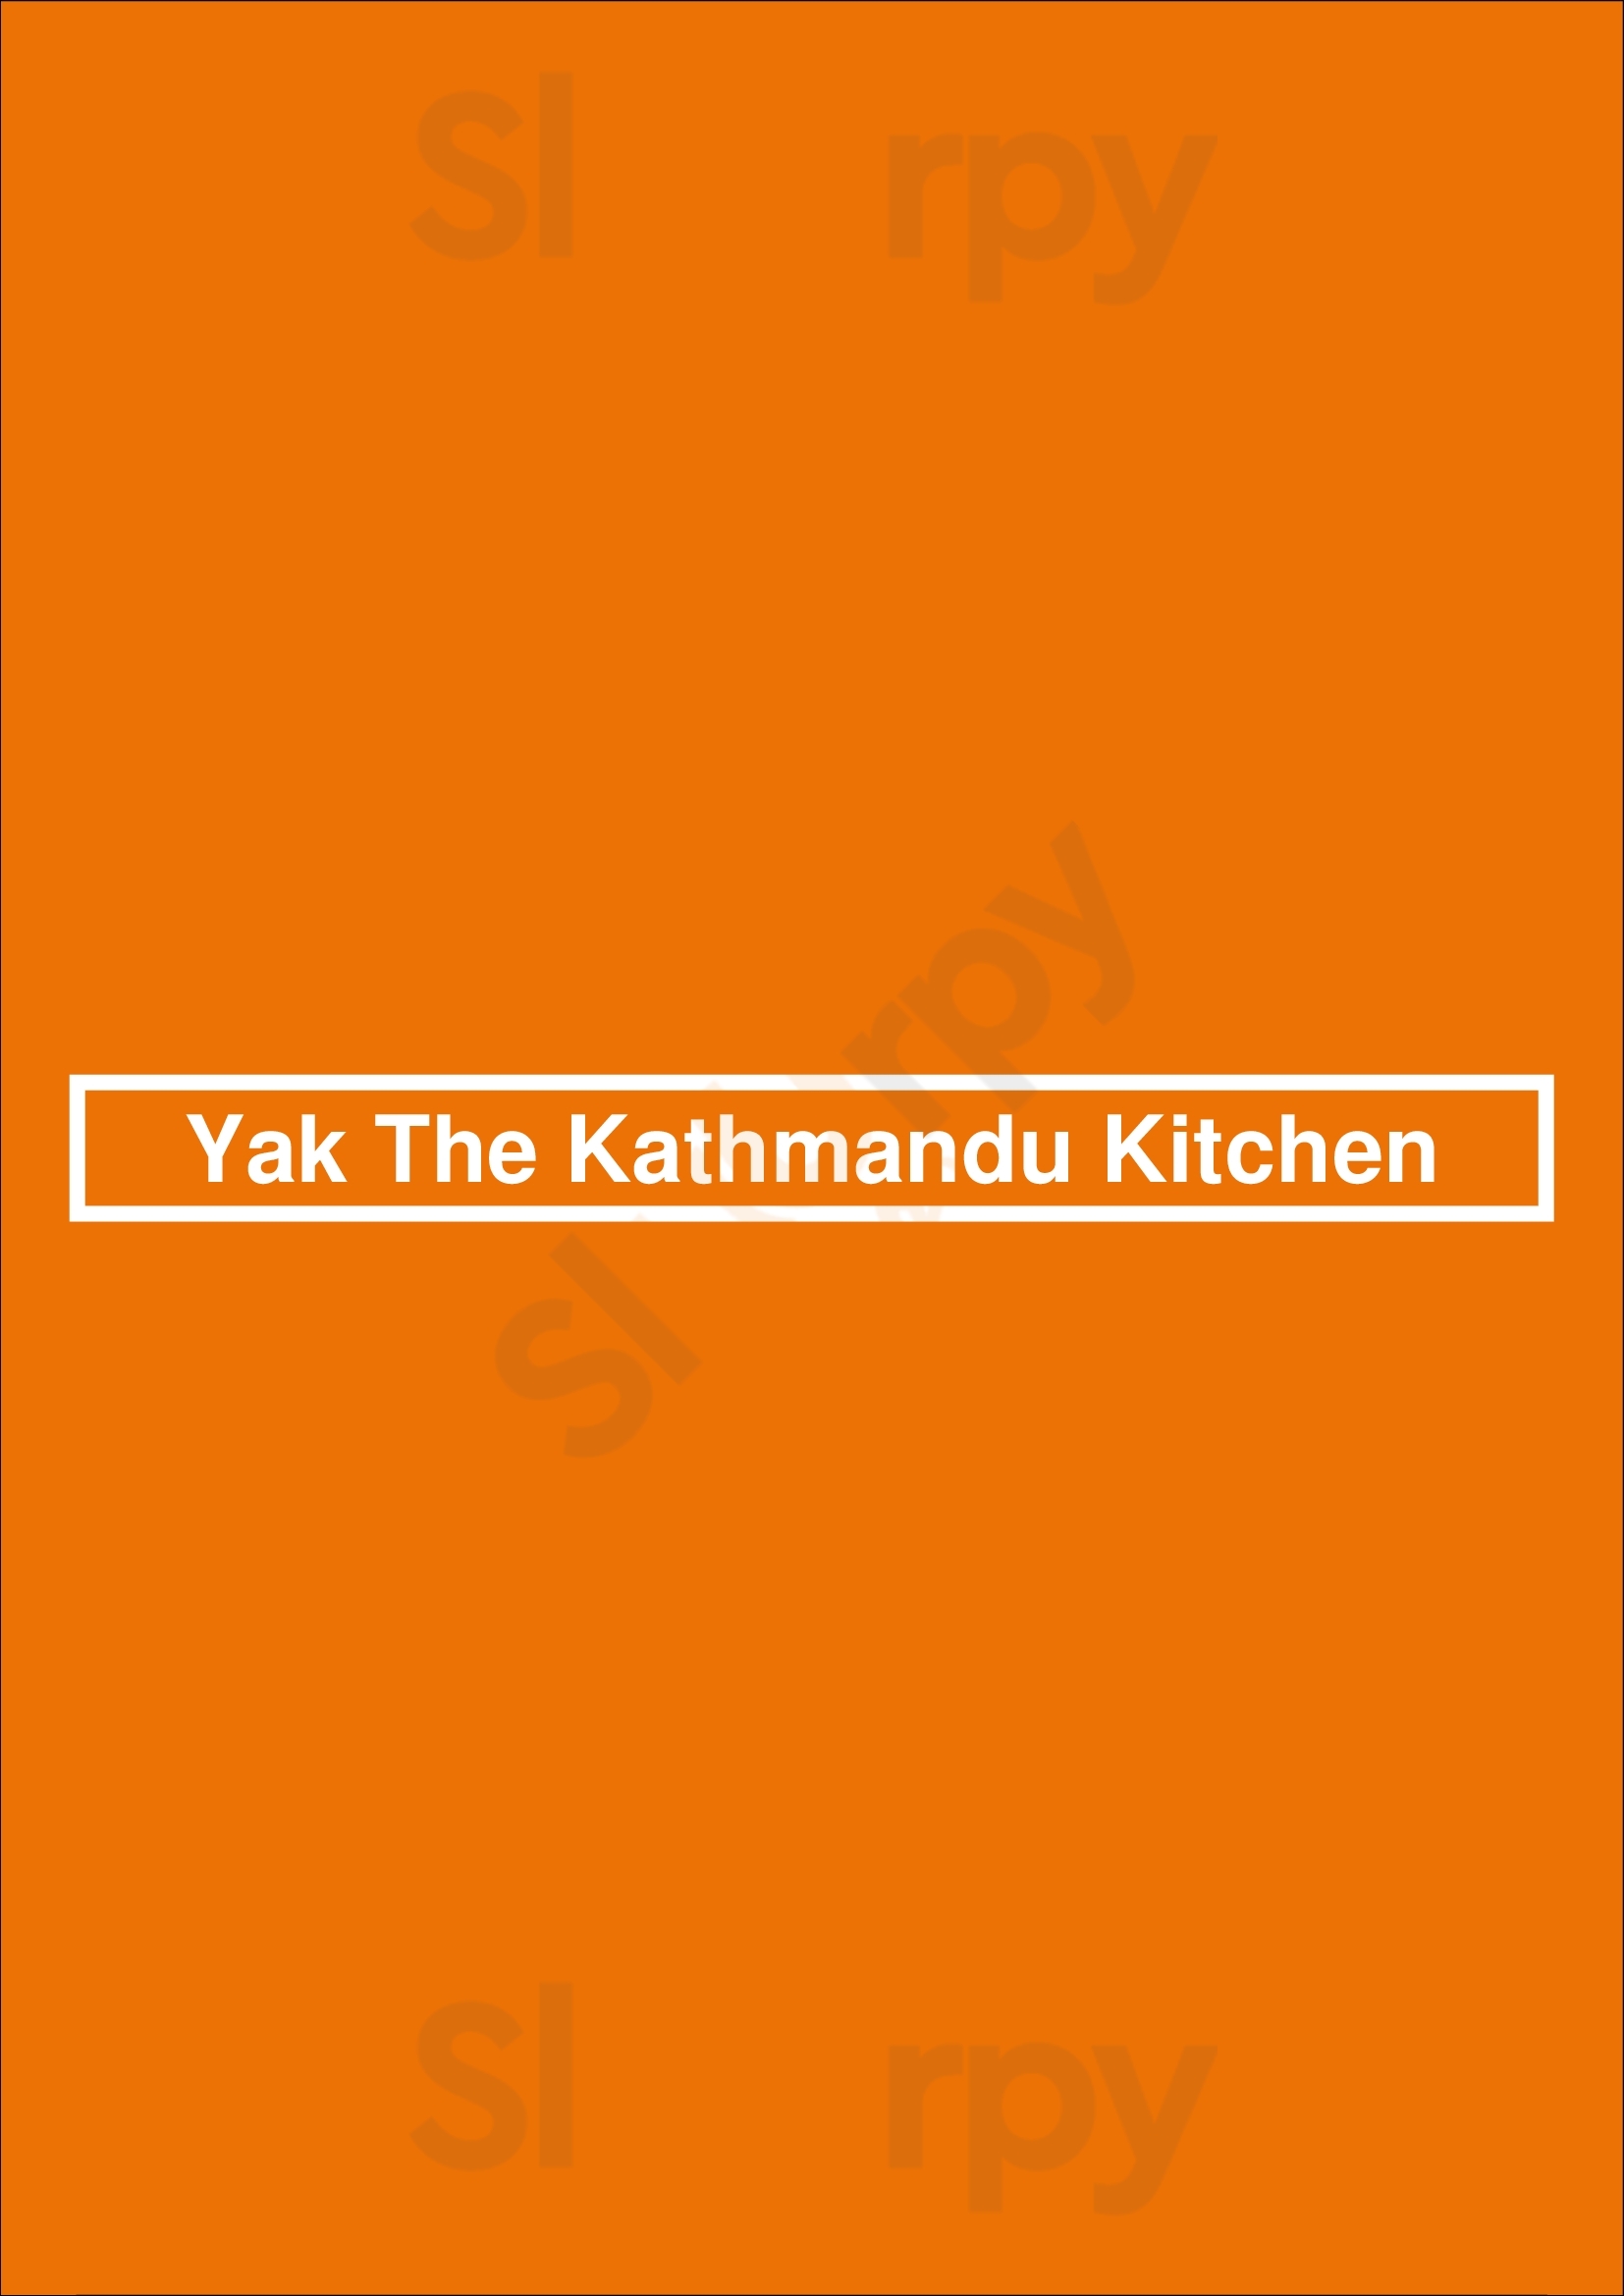 Yak The Kathmandu Kitchen Mobile Menu - 1